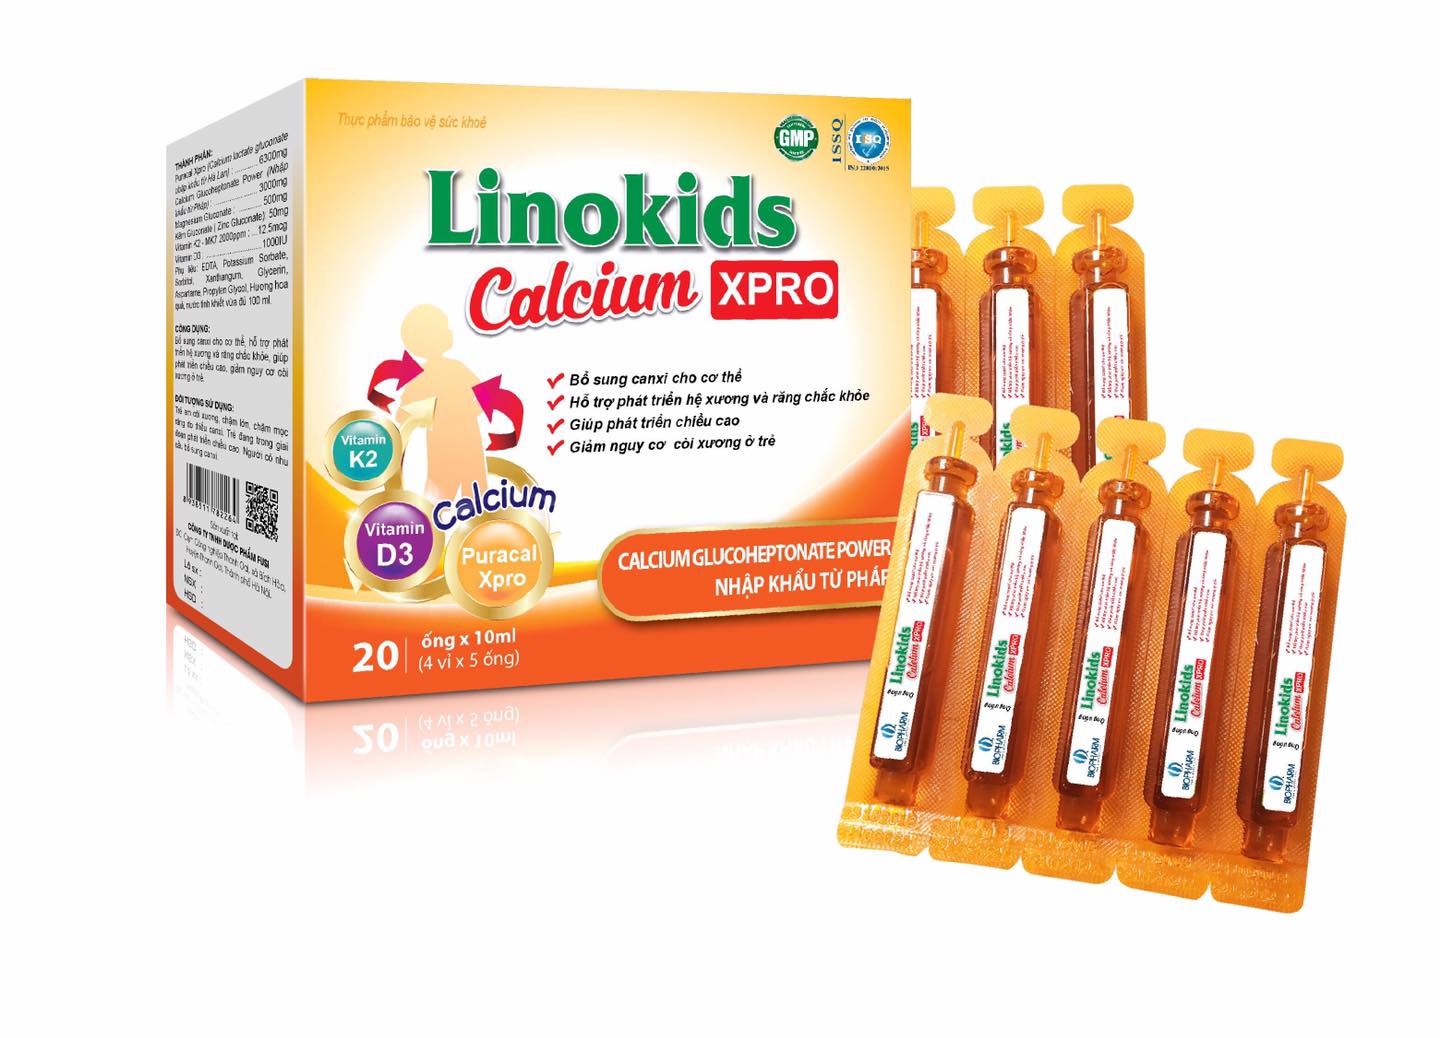 Ống uống Linokids Calcium Xpro - Bổ sung canxi, giúp xương chắc khỏe